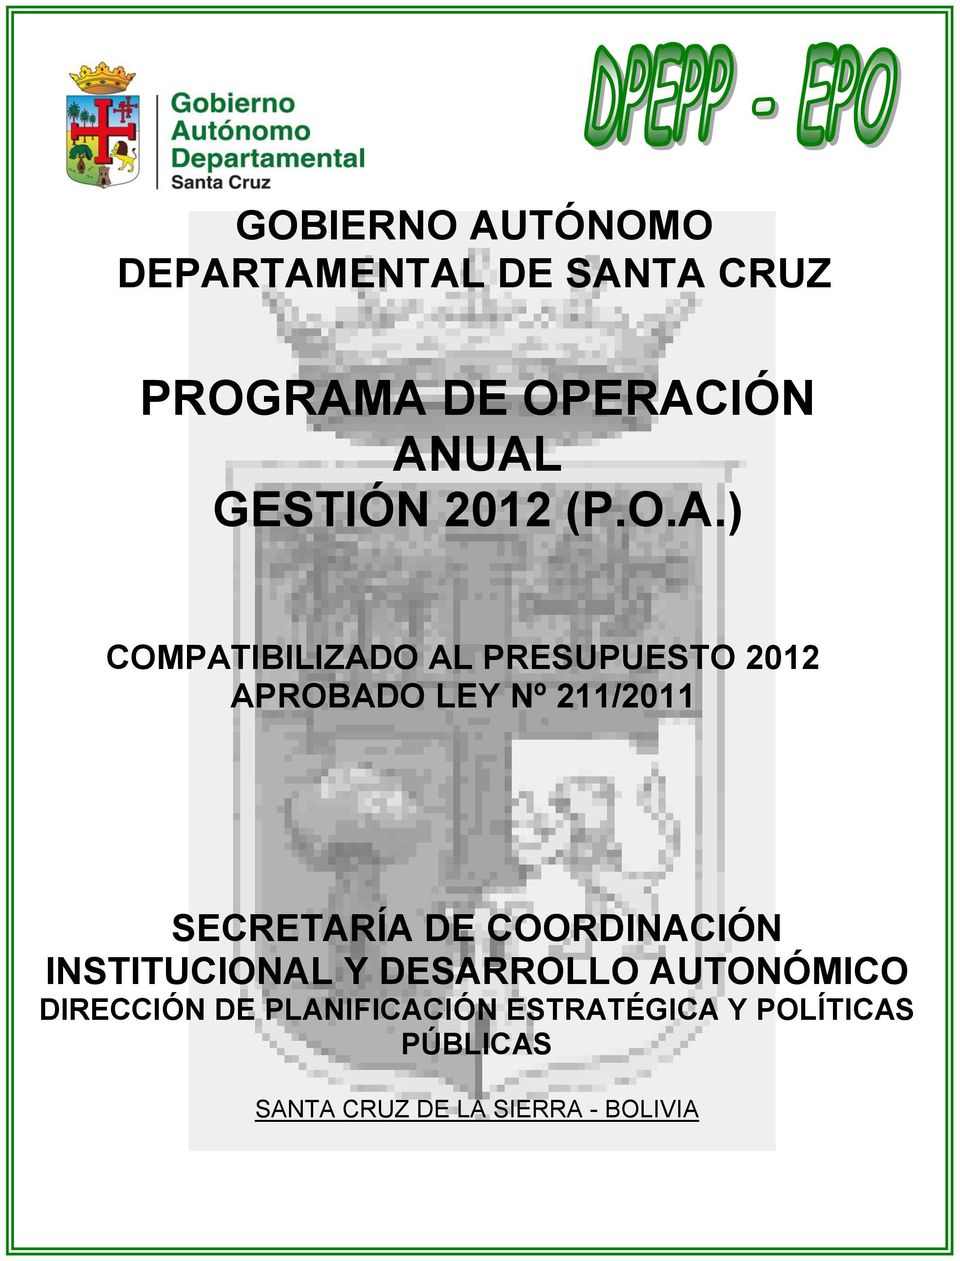 ) COMPATIBILIZADO AL PRESUPUESTO 2012 APROBADO LEY Nº 211/2011 SECRETARÍA DE